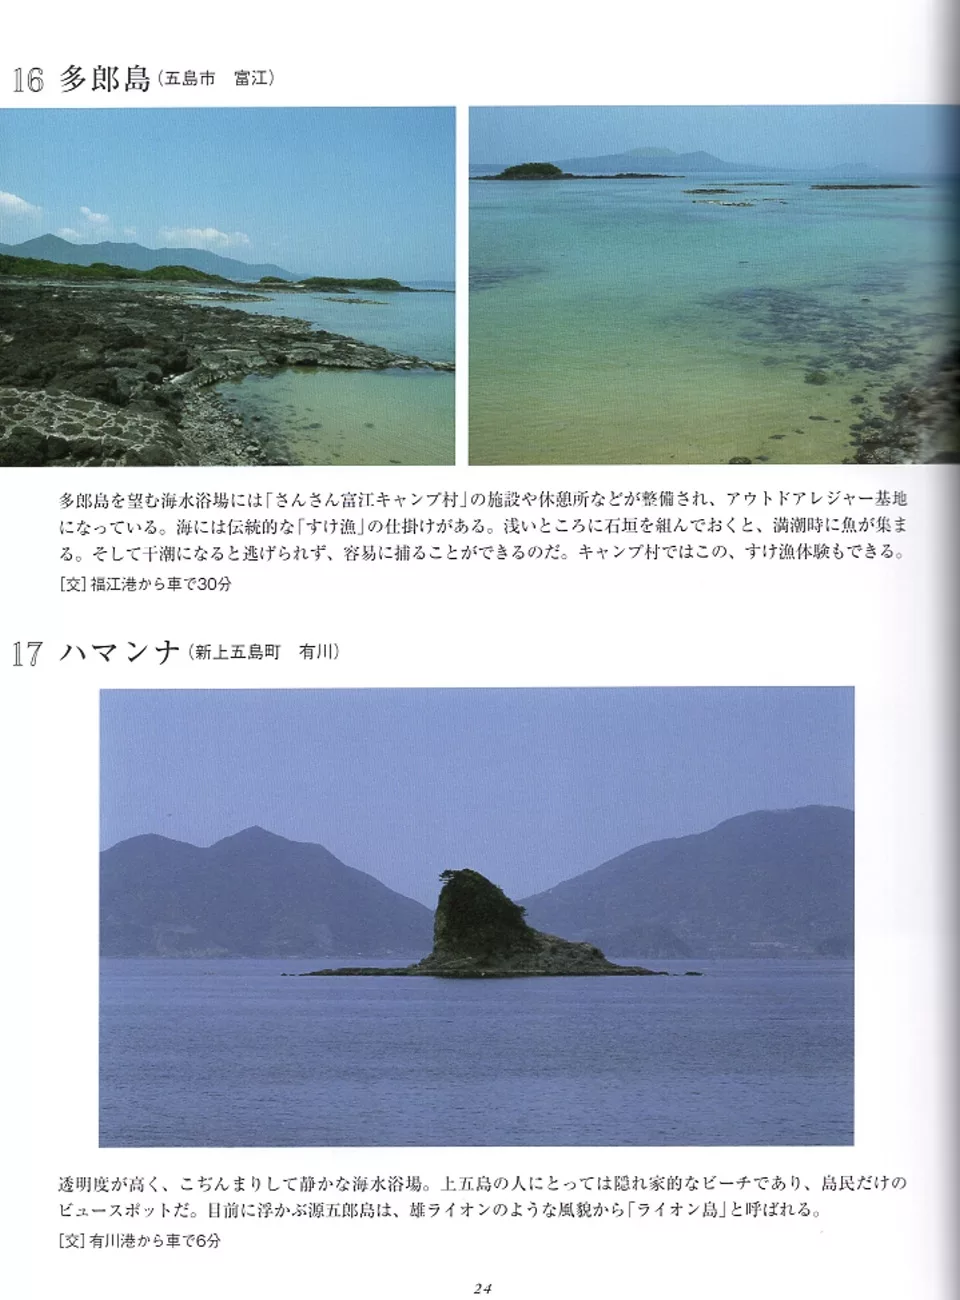 多郎島